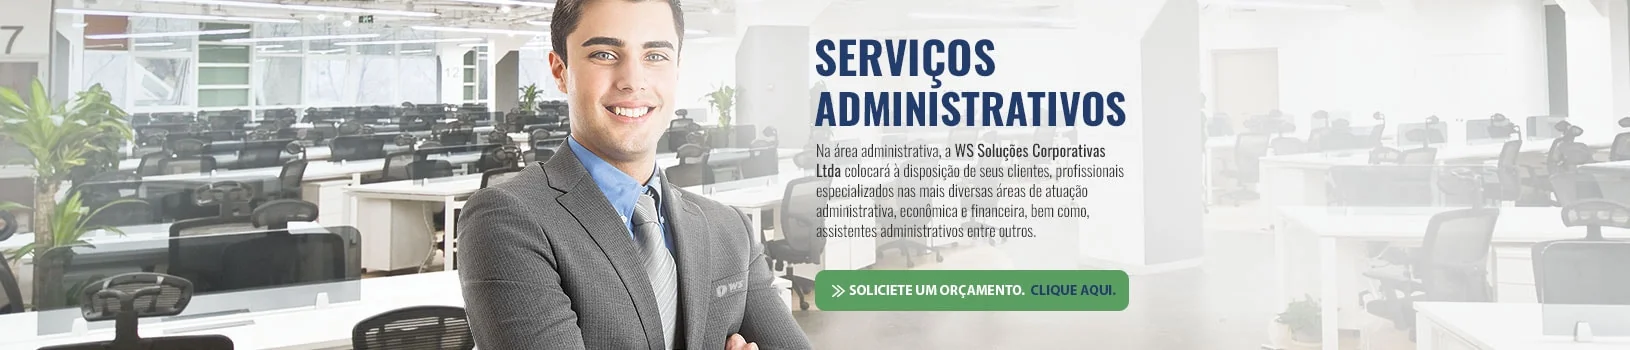 Destaque | Serviços administrativos